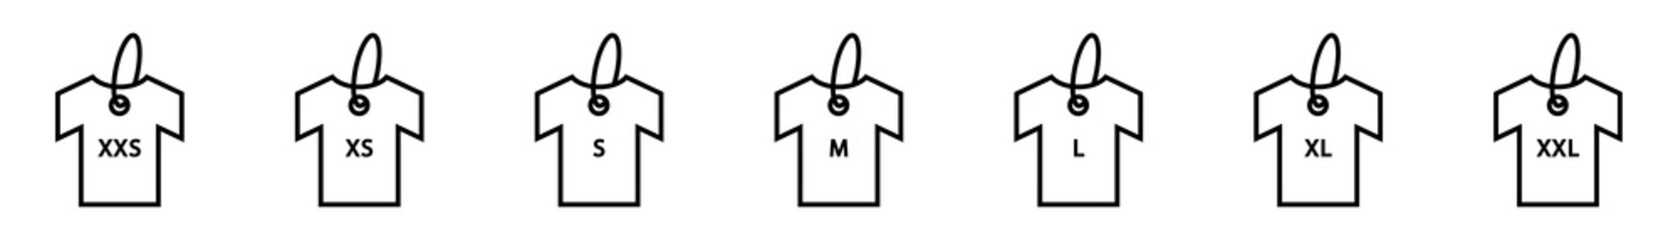 Conjunto de icono de camisetas con tallas del tamaño de la ropa. Concepto de tamaño de camisa